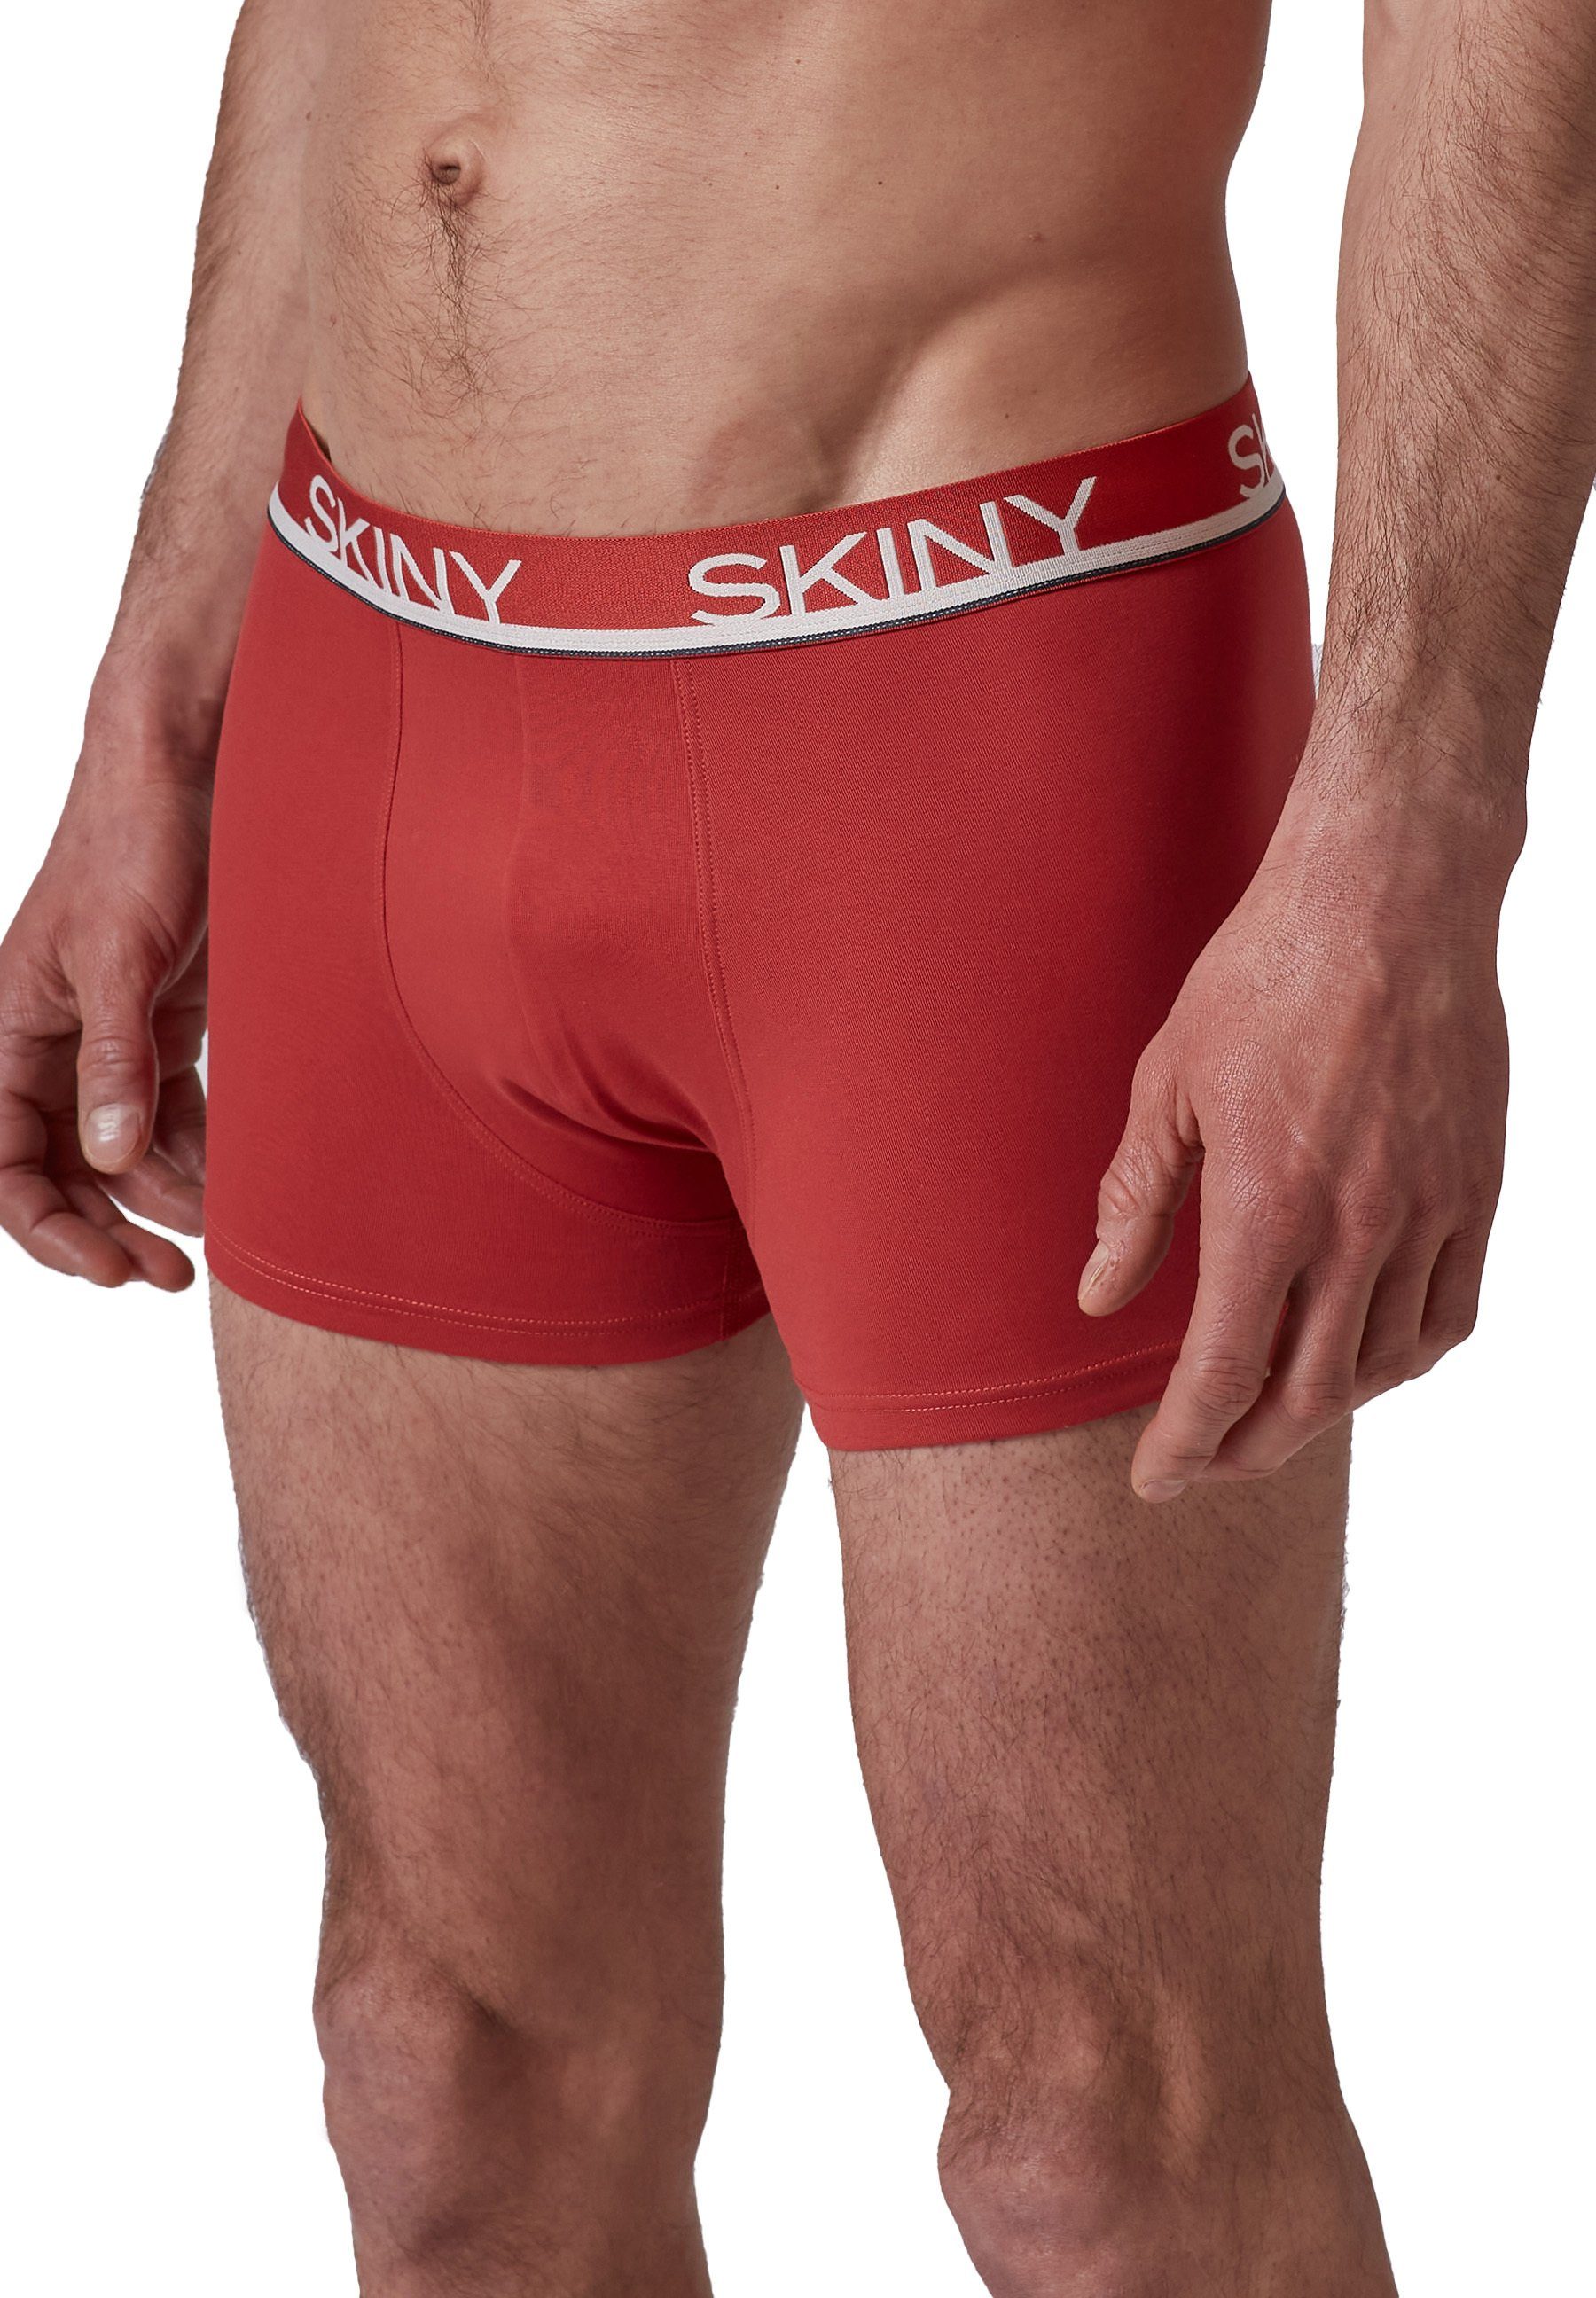 - Boxer Pants Shorts Trunks, Boxer Blau/Grau/Rot Herren Skiny 3er Pack